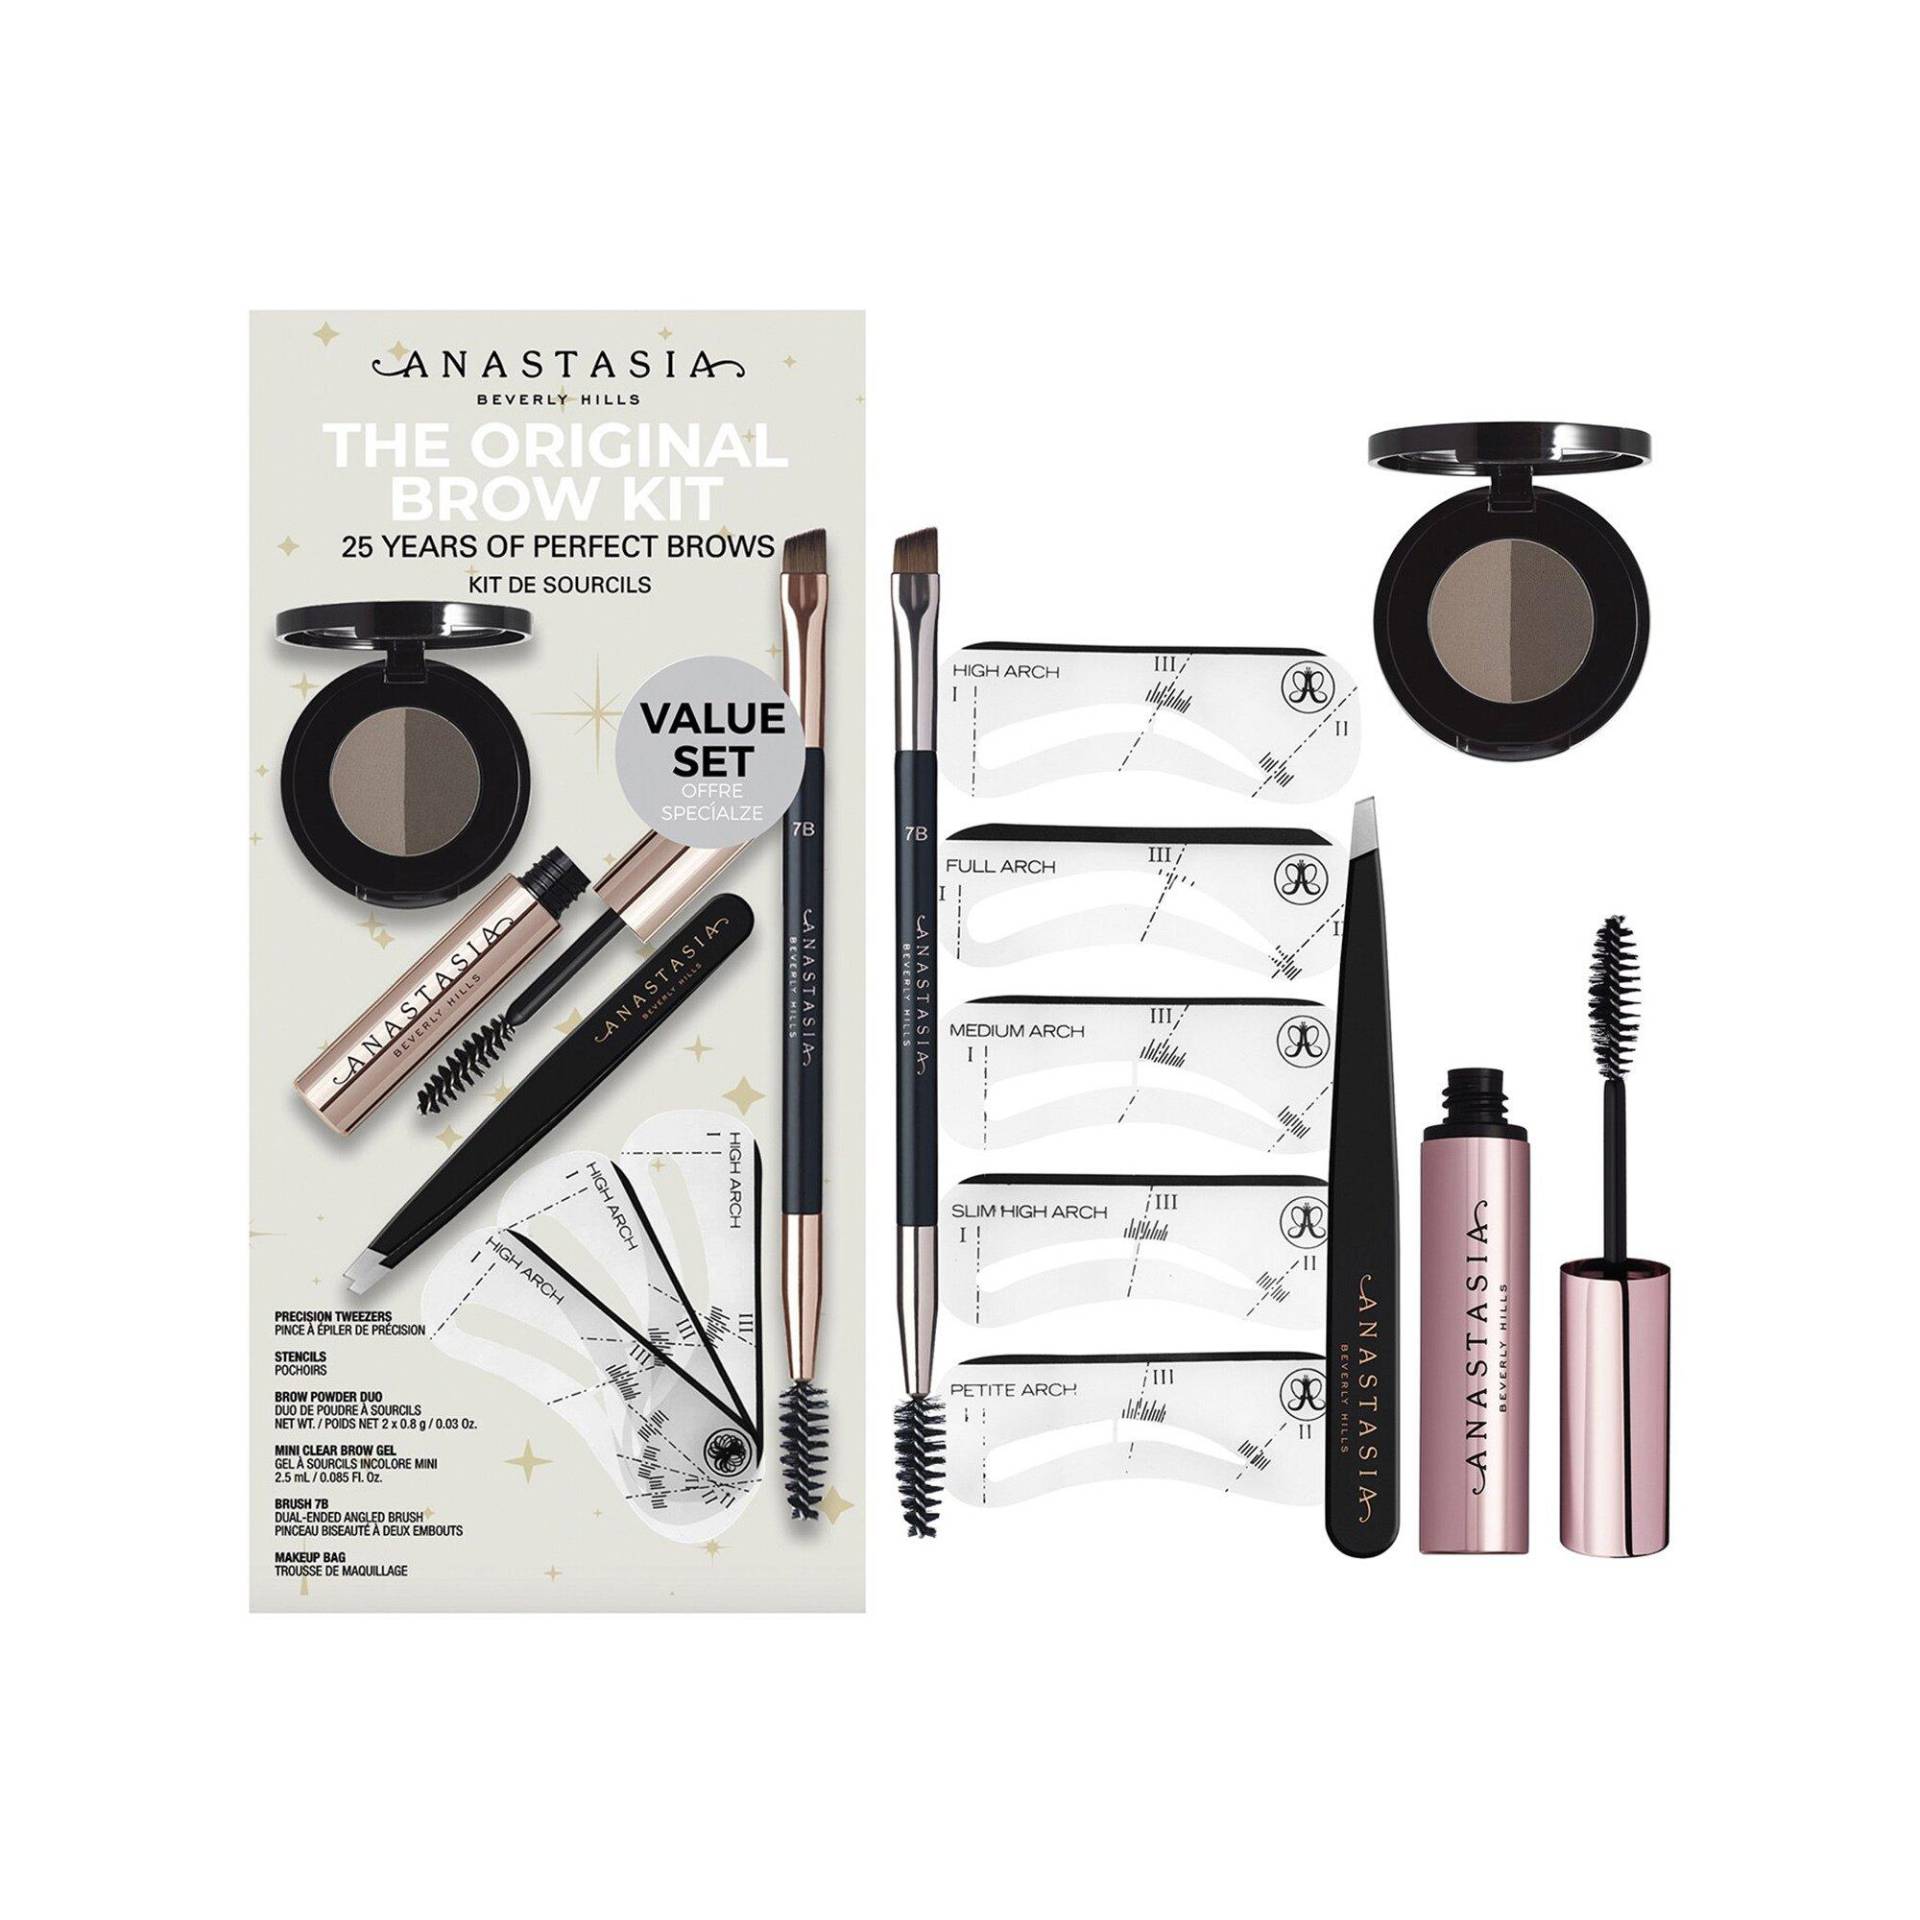 Og Brow Kit - Augenbrauen-make-up-set Damen DARK BROWN Set von Anastasia Beverly Hills